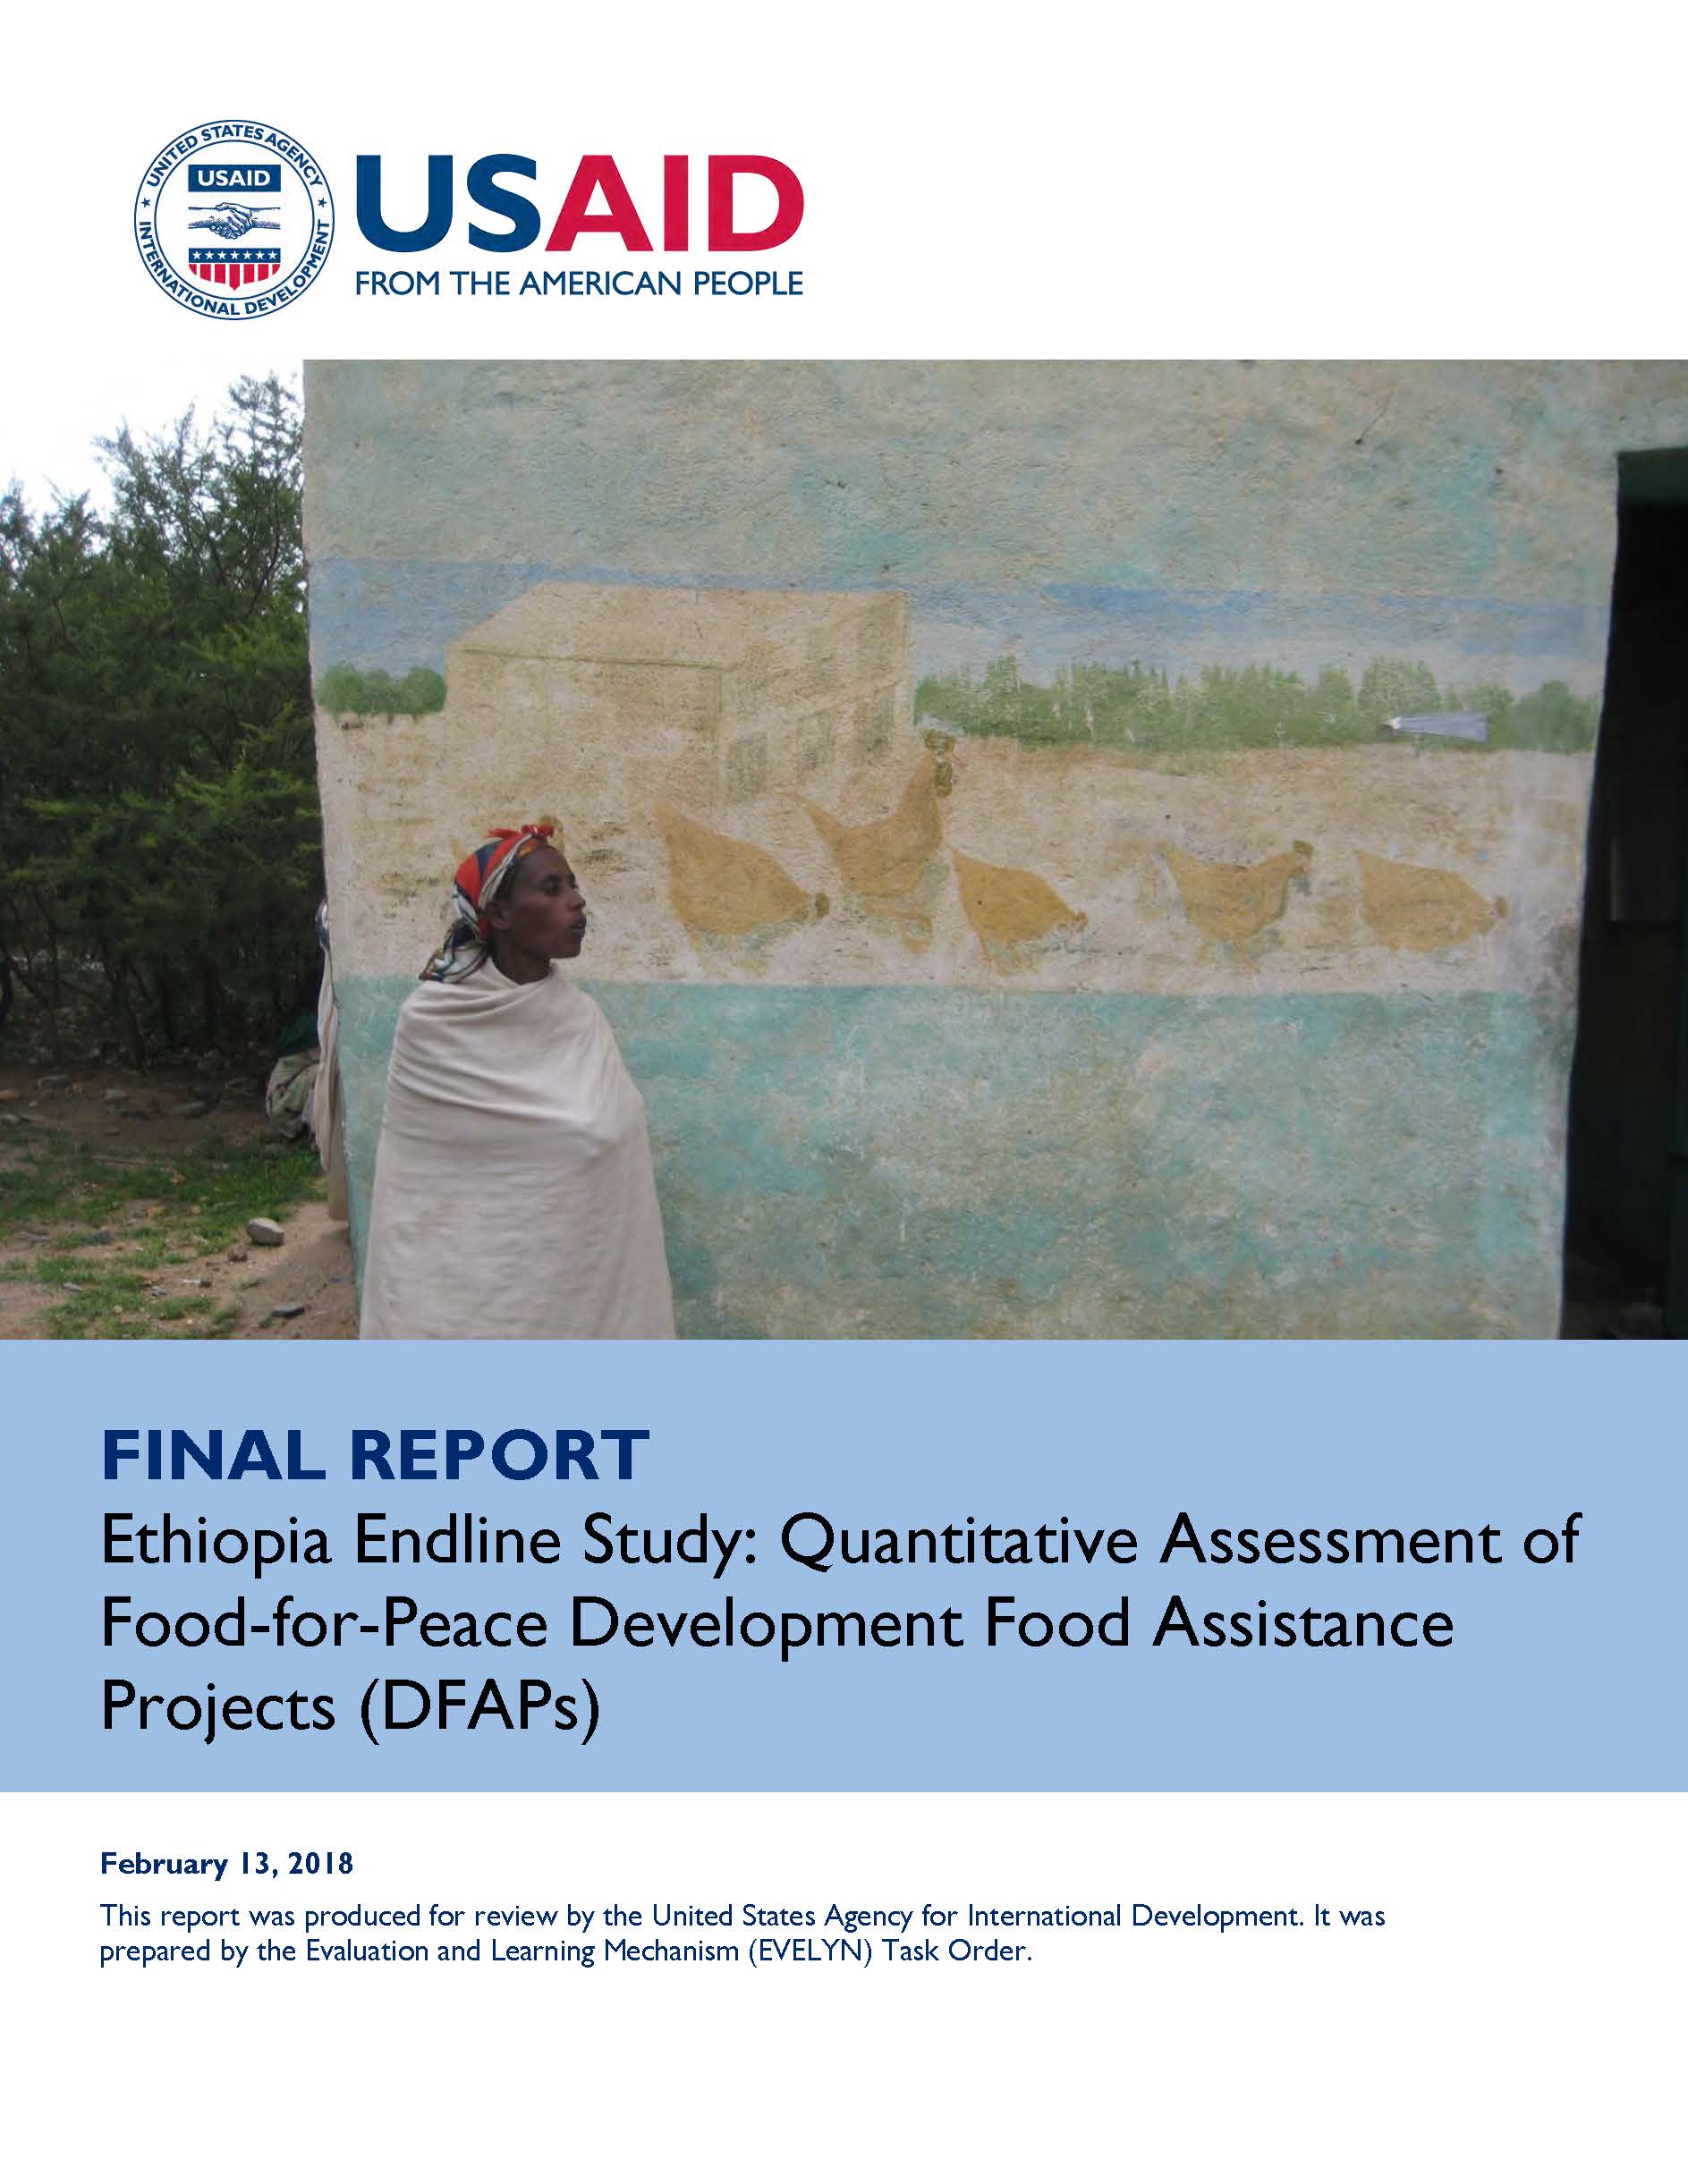 Page de couverture du RAPPORT FINAL Étude finale sur l'Éthiopie : Évaluation quantitative des projets d'assistance alimentaire pour le développement de la nourriture pour la paix (DFAP)